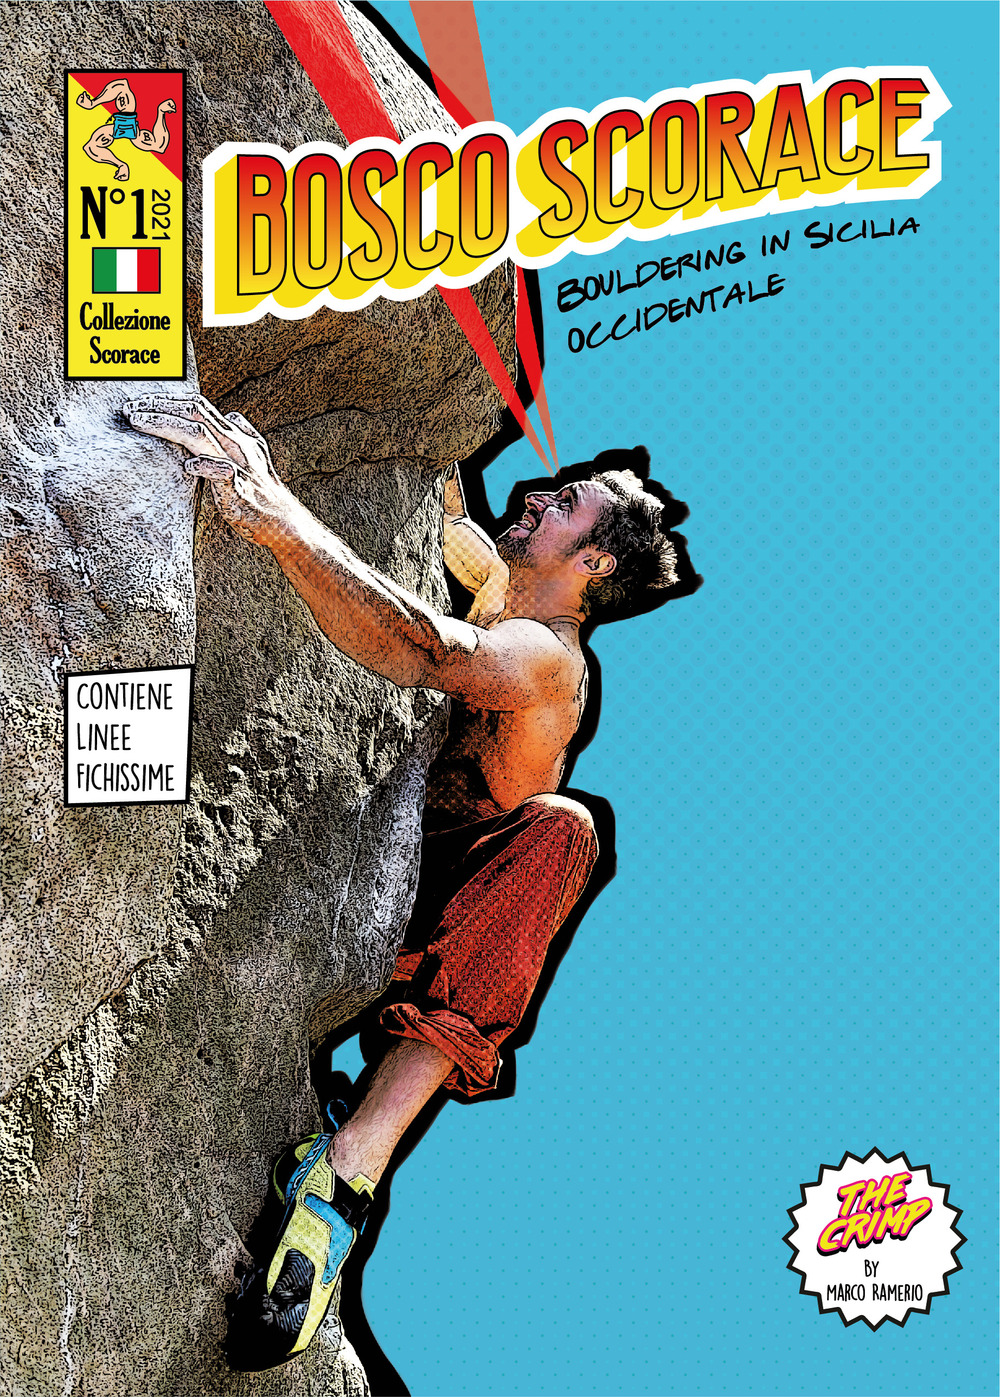 Bosco Scorace. Bouldering in Sicilia Occidentale